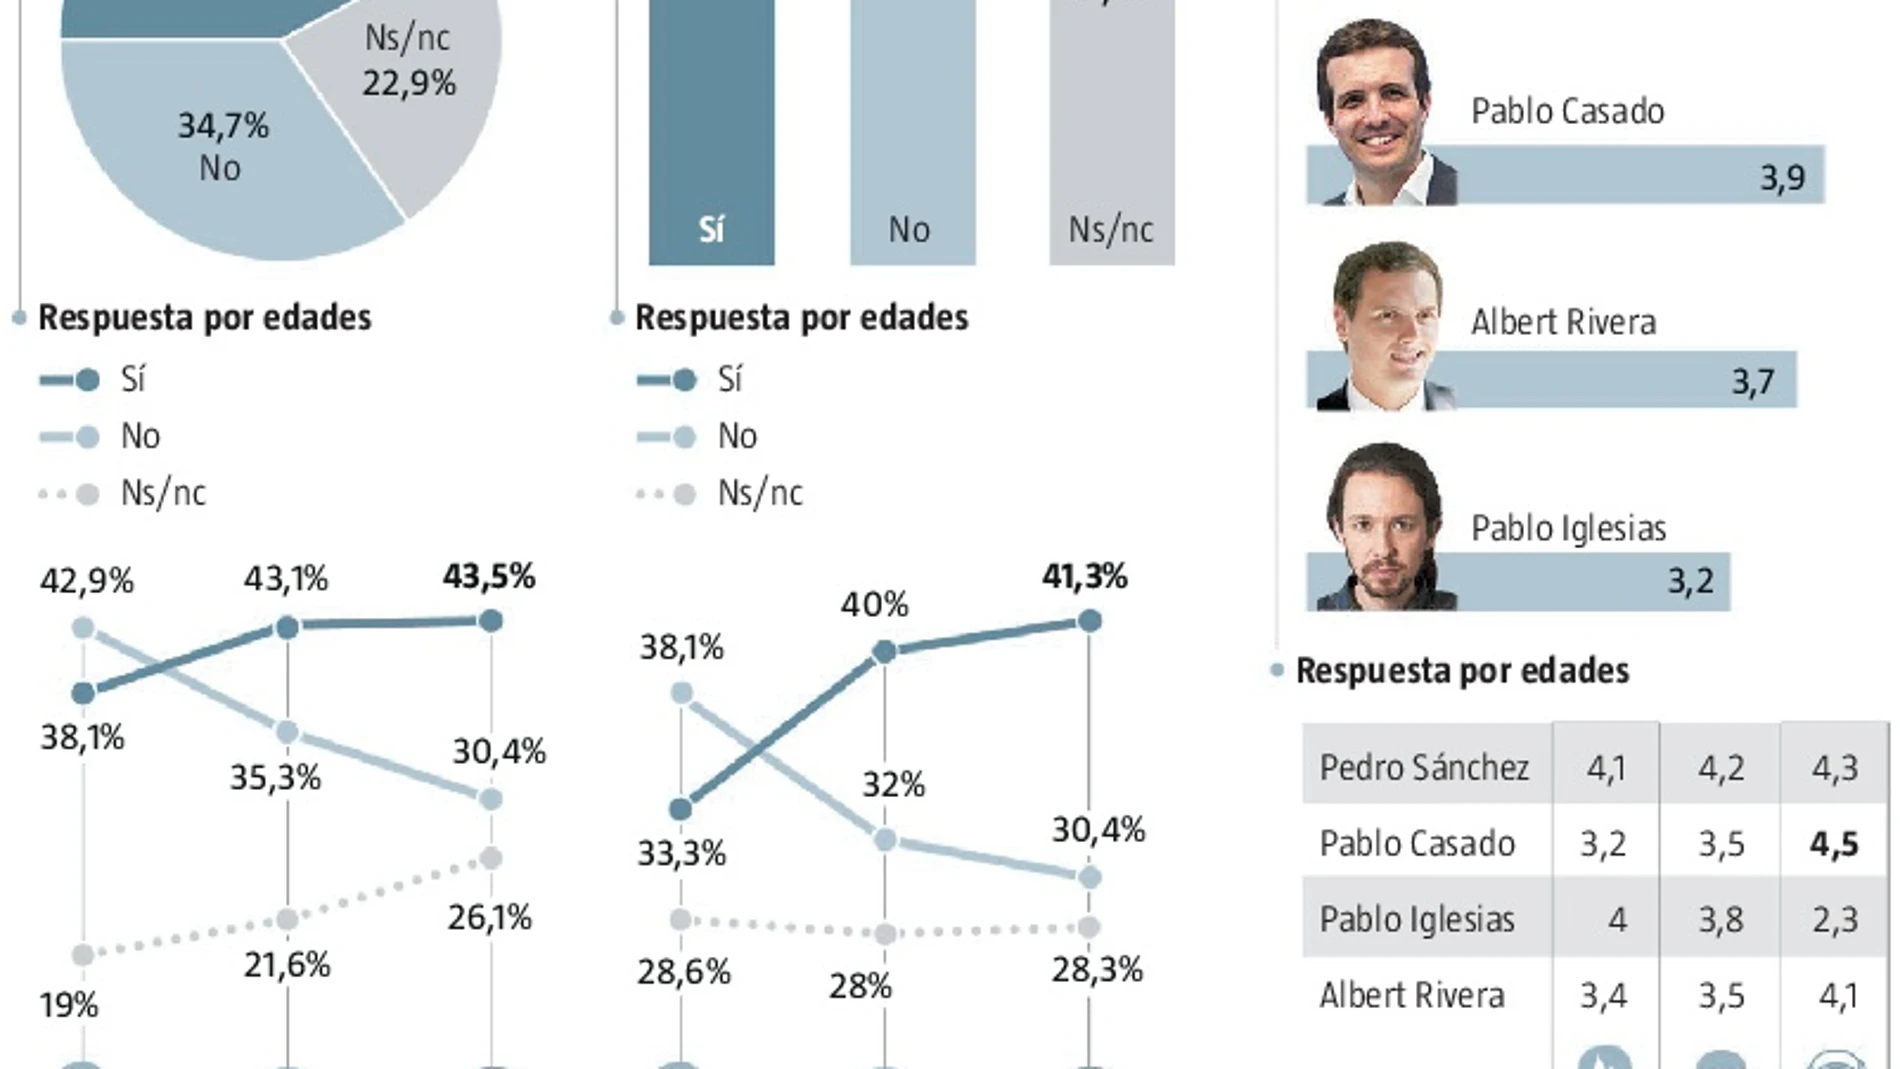 La mayoría cree que Pablo Casado será mejor candidato que Mariano Rajoy